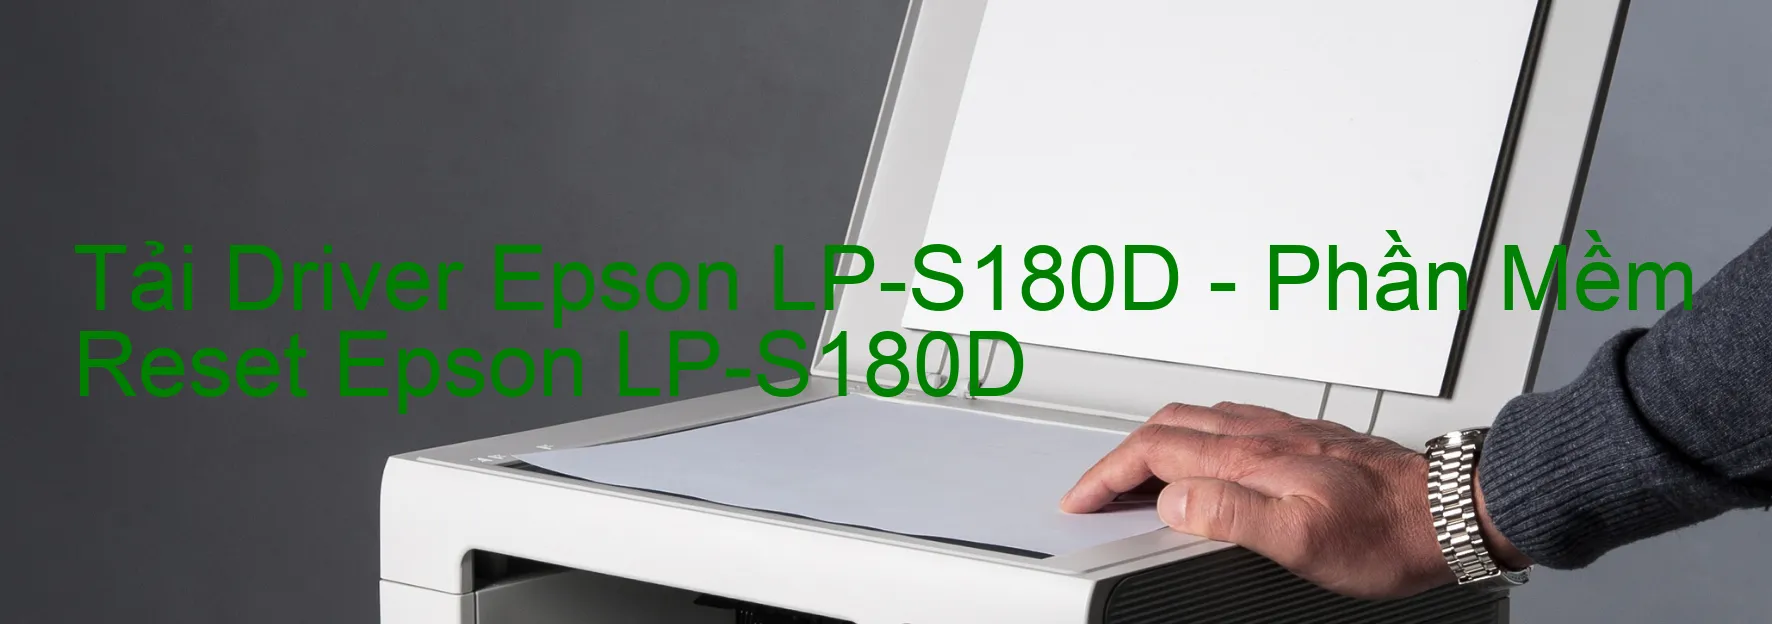 Driver Epson LP-S180D, Phần Mềm Reset Epson LP-S180D